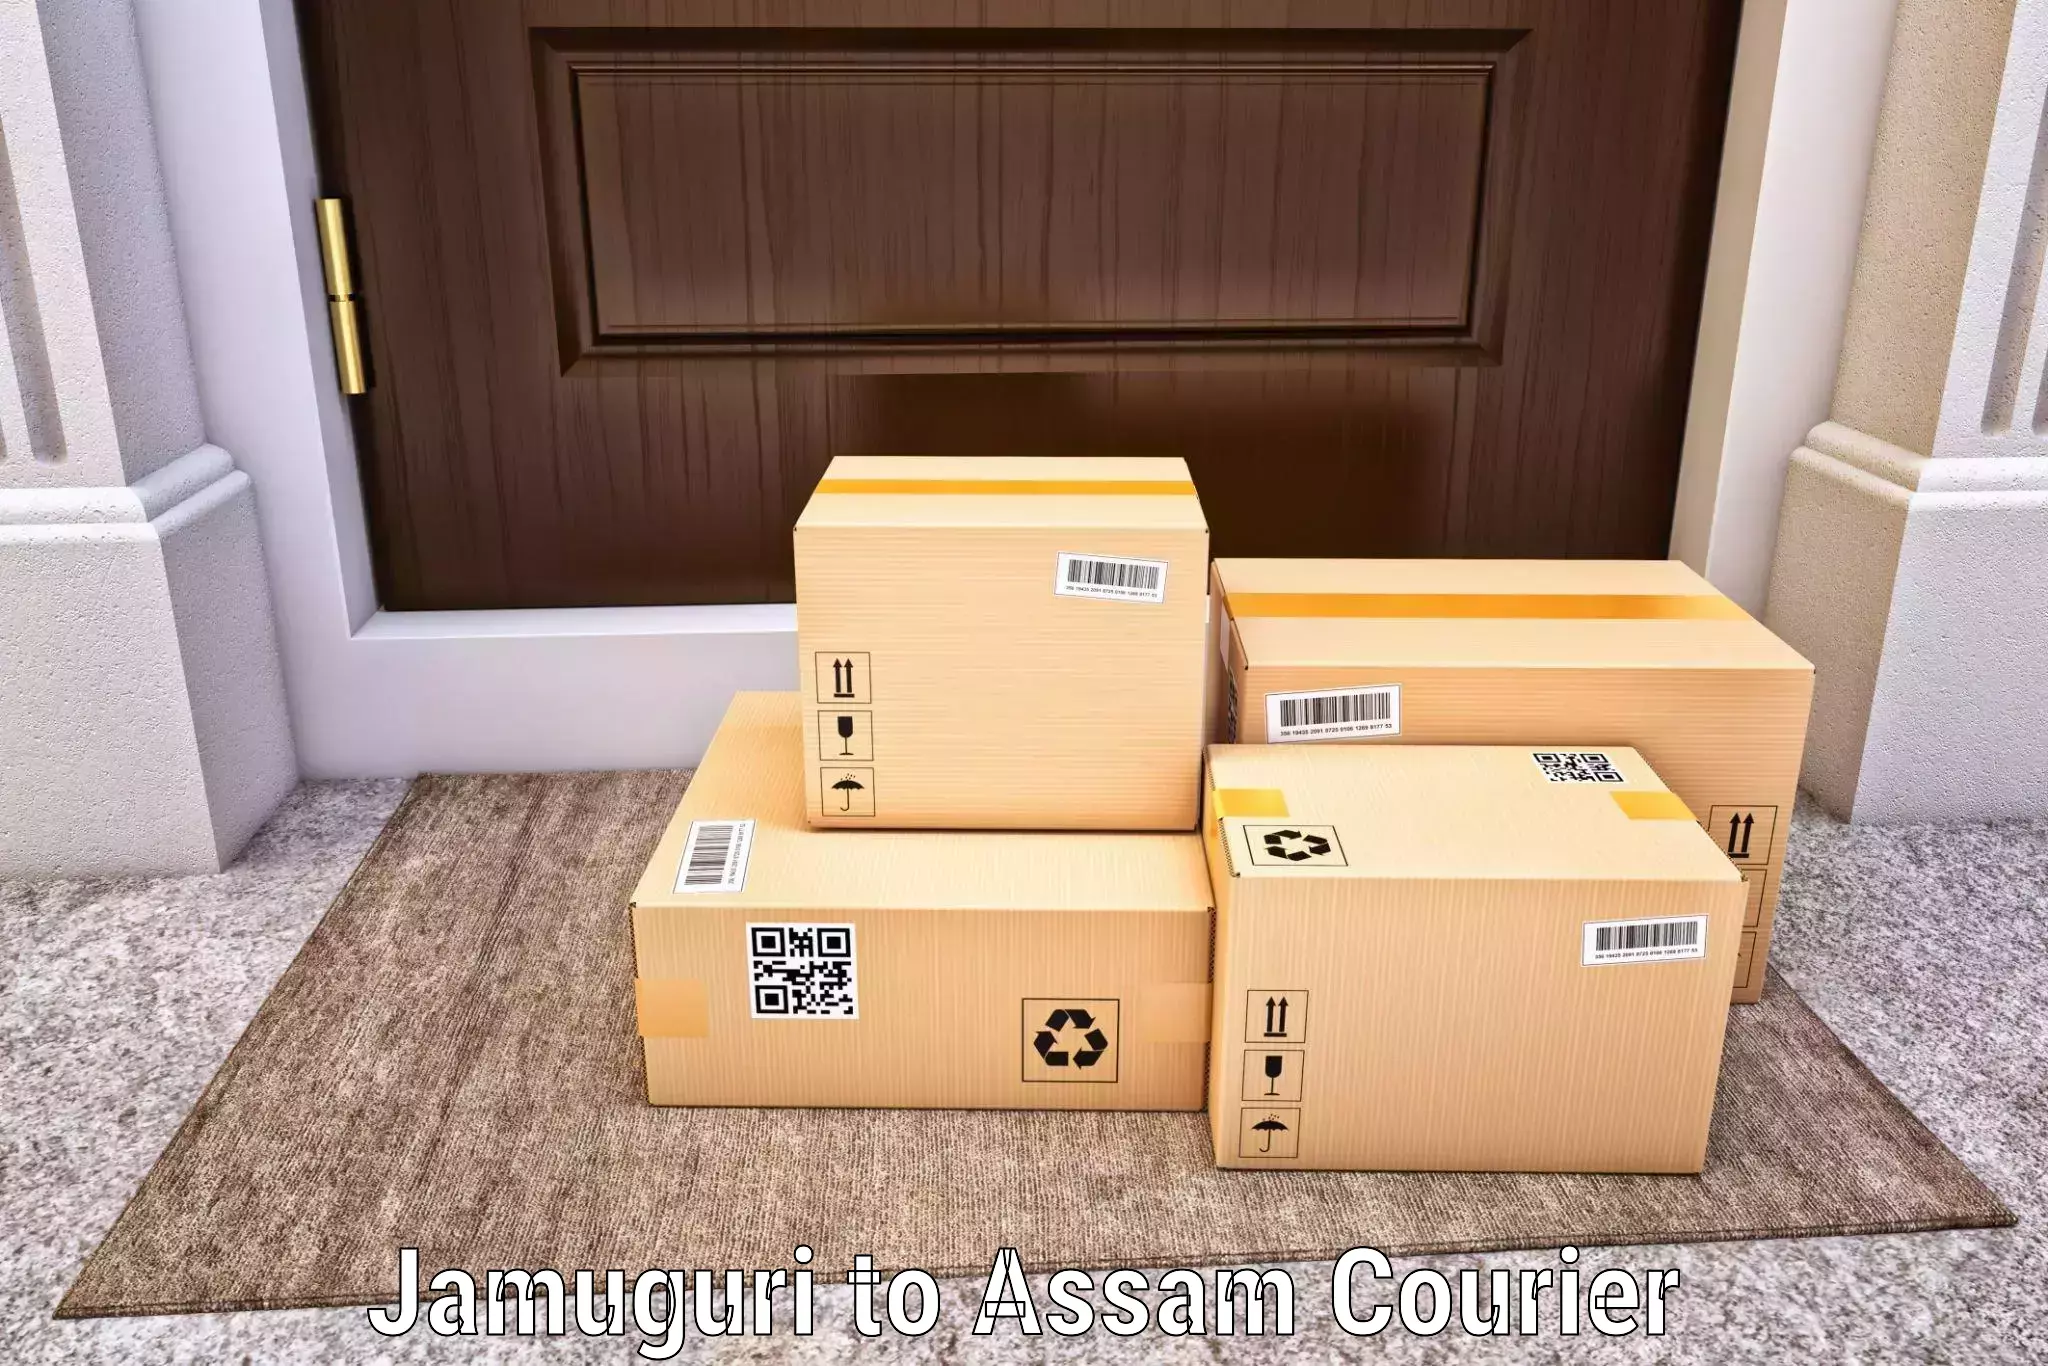 On-time shipping guarantee Jamuguri to Dotma